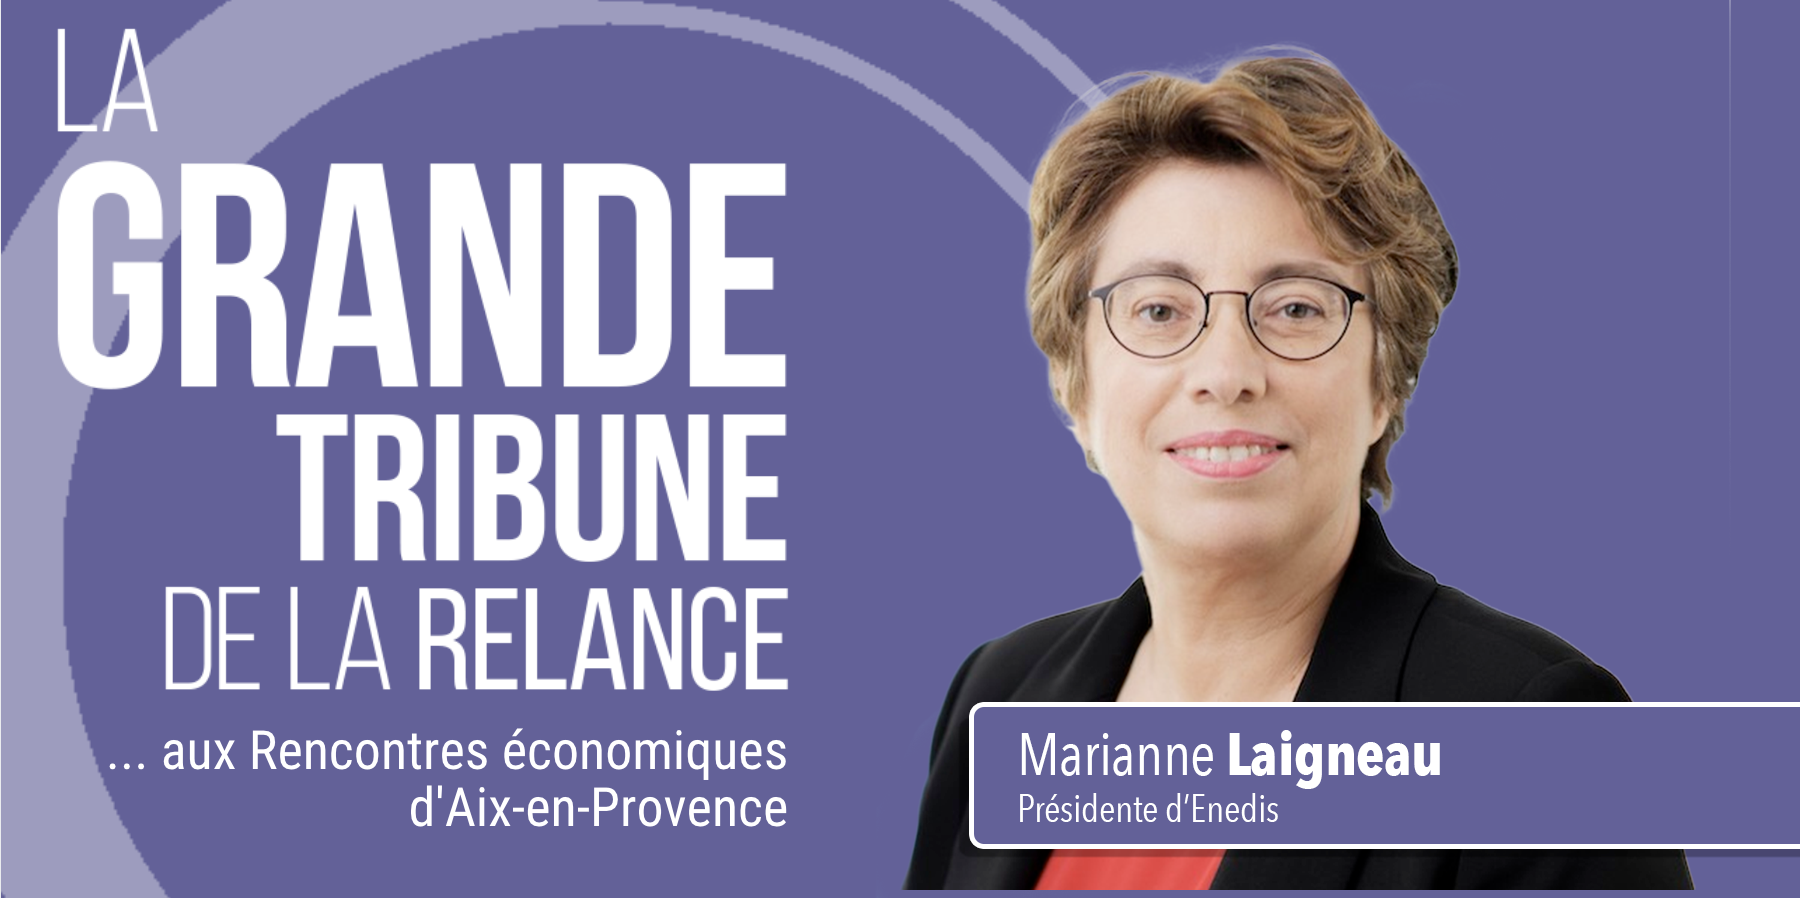 Marianne Laigneau, Enedis : 